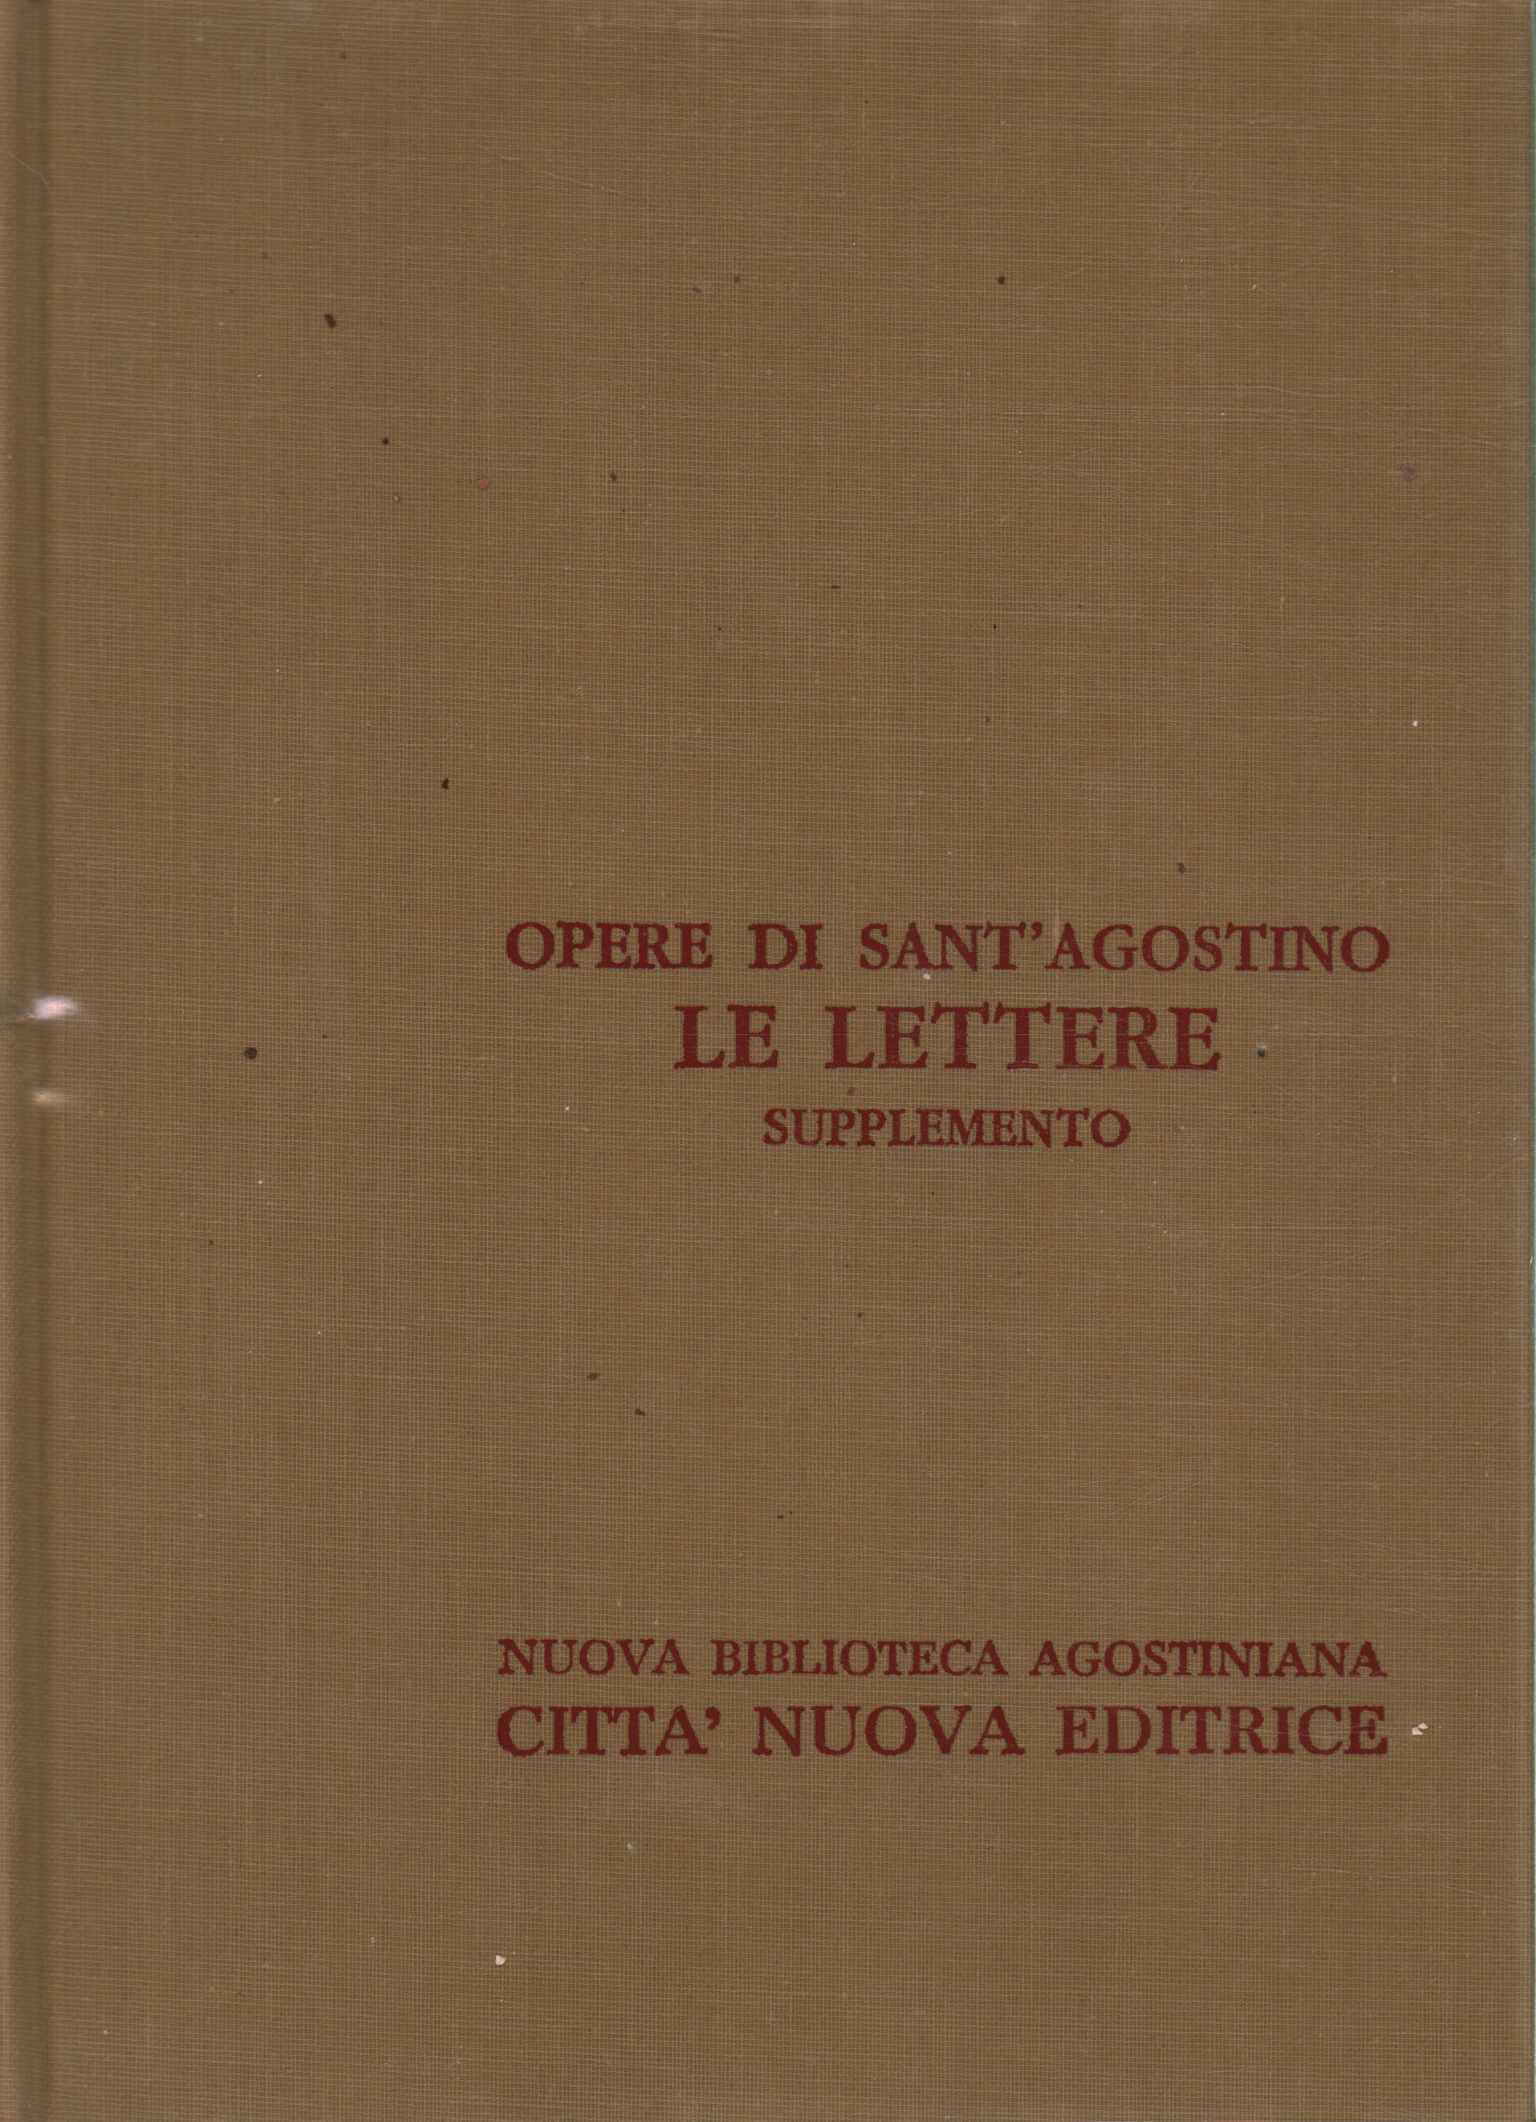 Œuvres de Sant'Agostino XXIII/A.%2,Œuvres de Sant'Agostino XXIII/A.%2